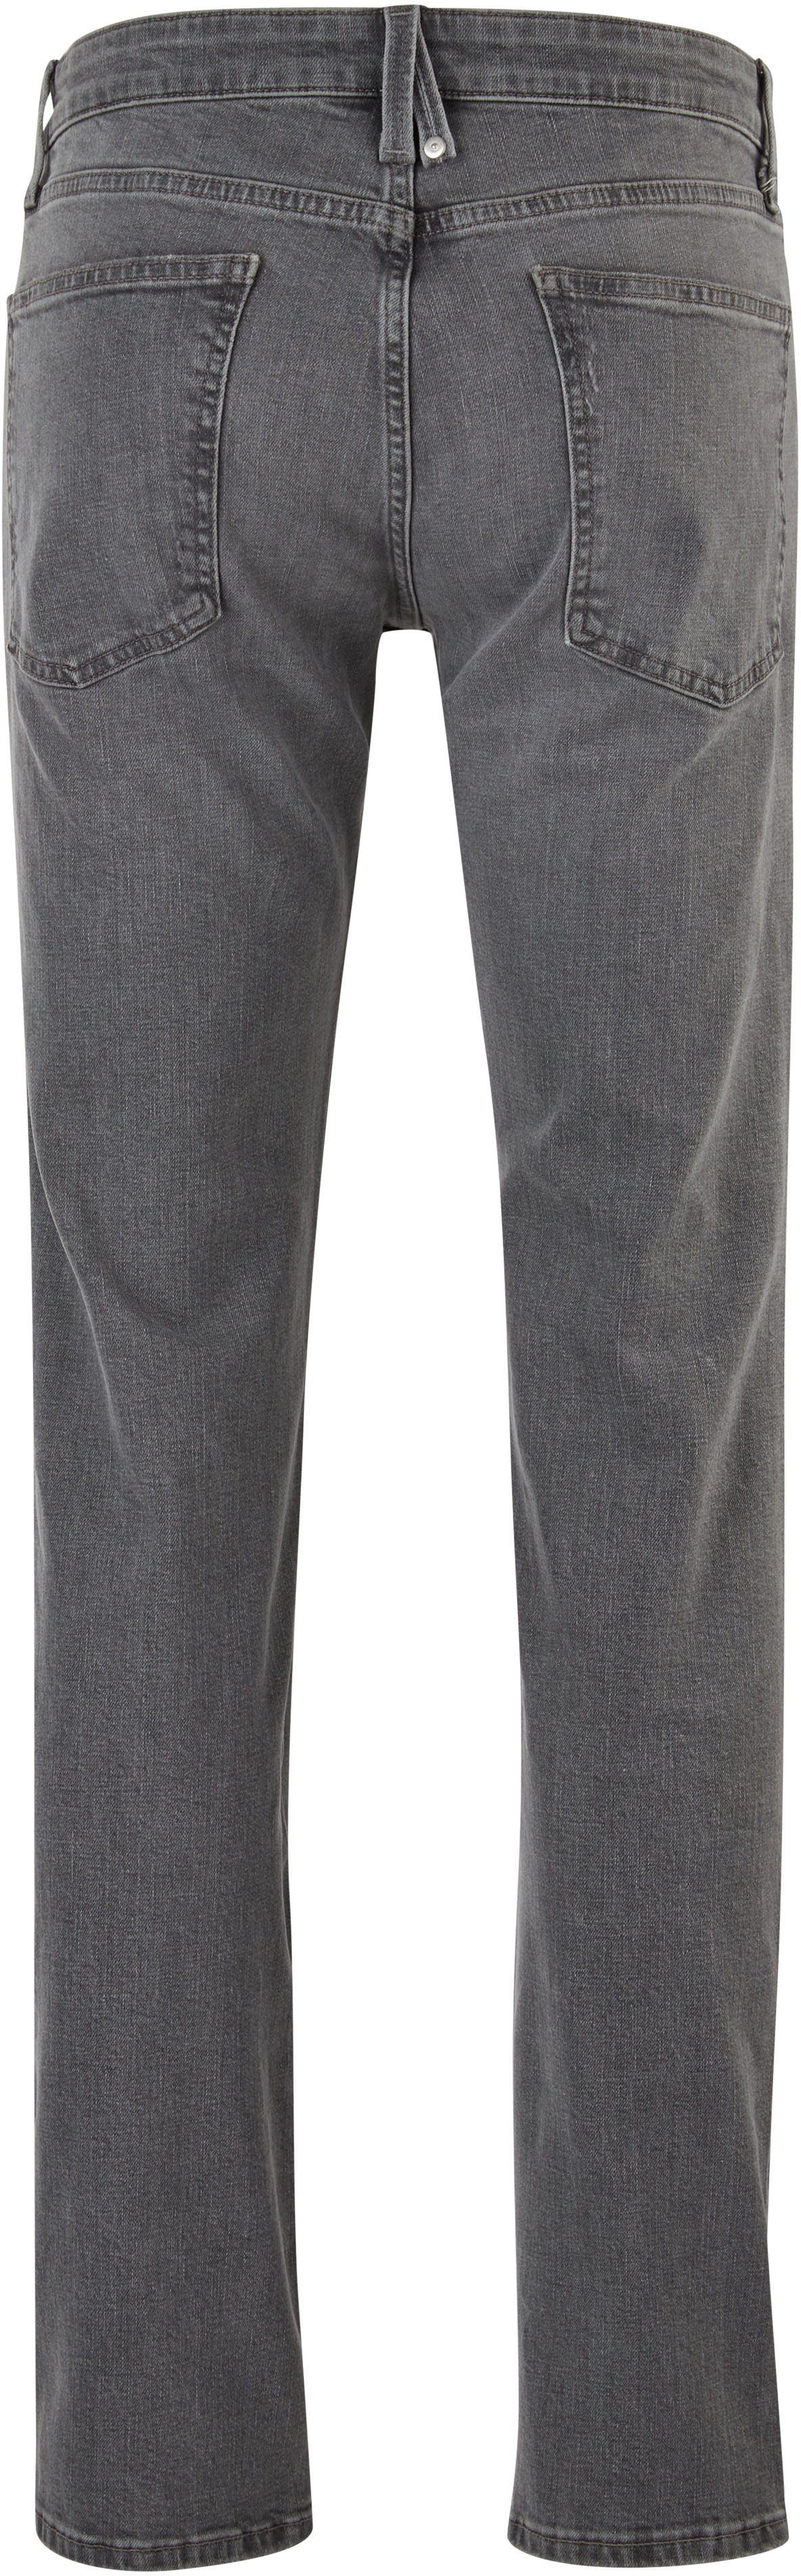 stein-grau s.Oliver mit 5-Pocket-Jeans Waschung authentischer